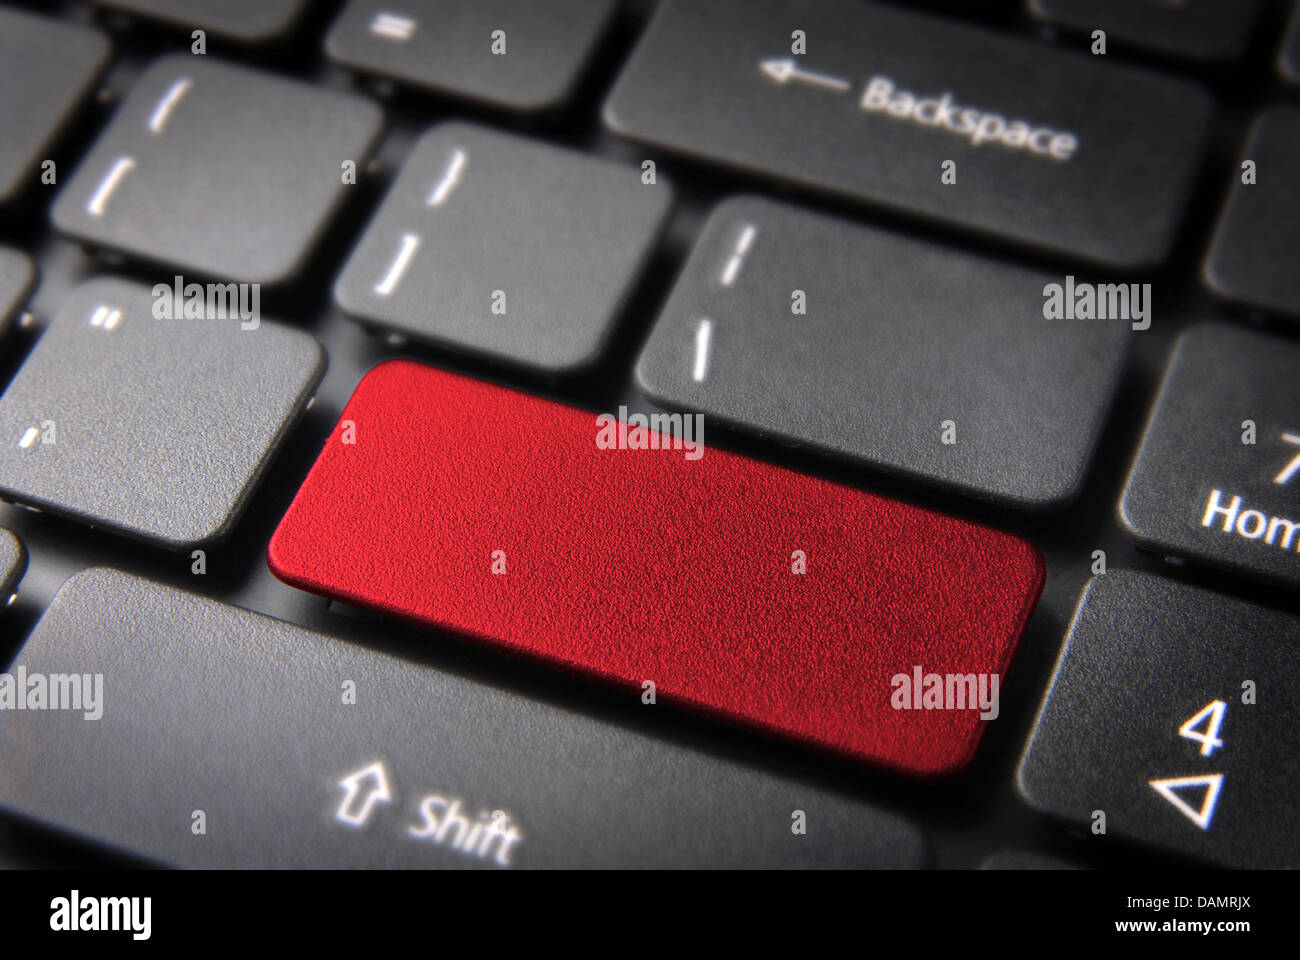 Roten Layout-Vorlage-Schlüssel auf Laptop-Tastatur bereit, Ihren eigenen Text oder Symbol enthalten. Im Preis inbegriffen Clipping-Pfad, so dass Sie leicht bearbeitet werden kann. Stockfoto